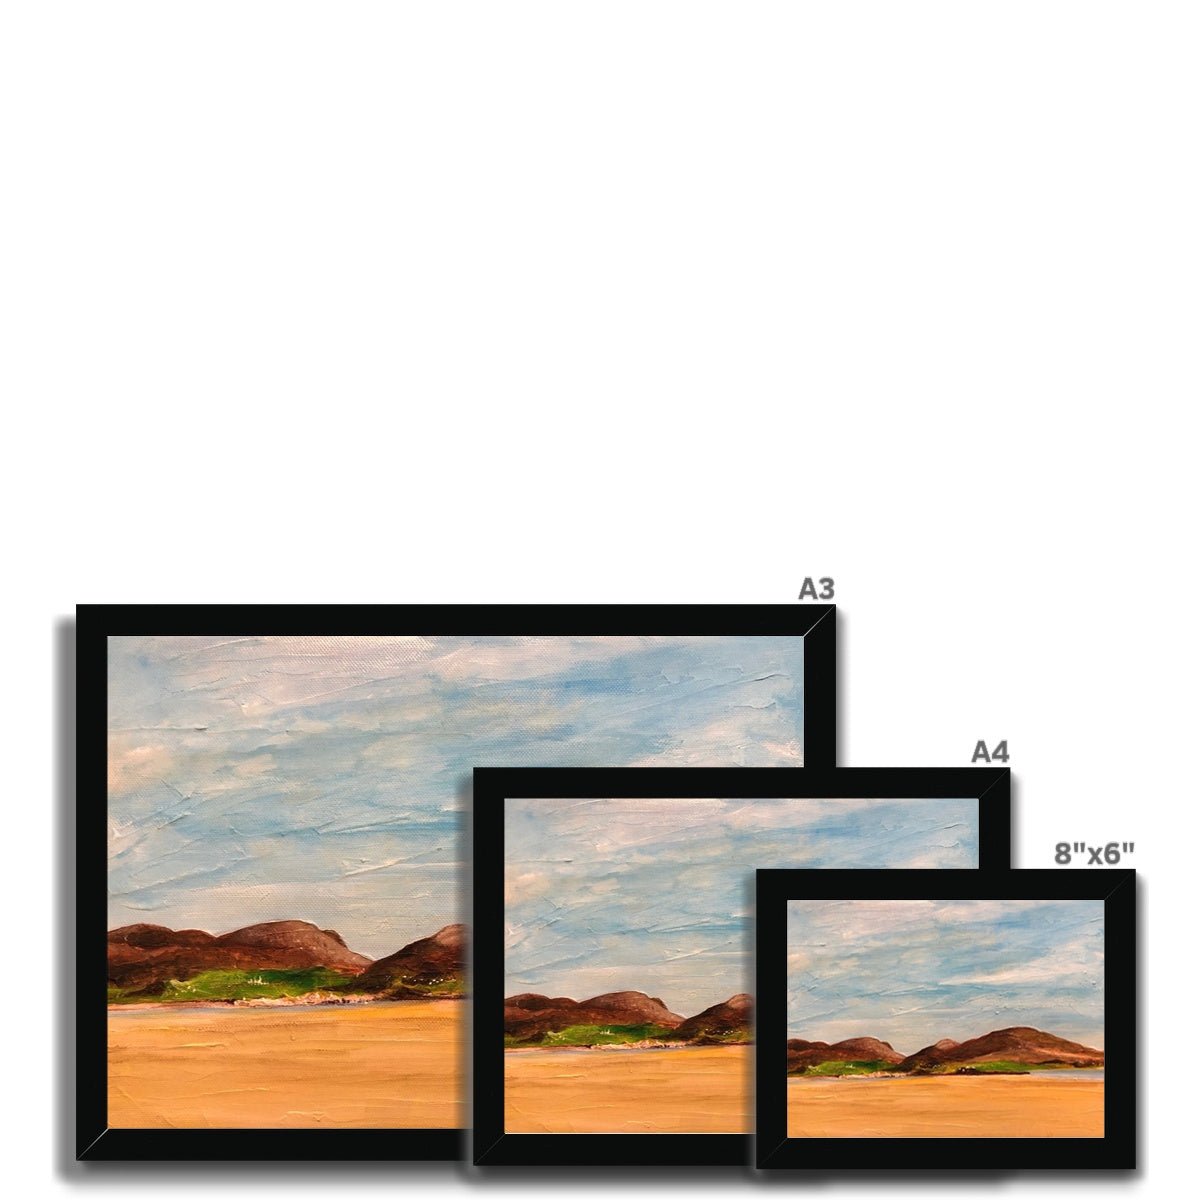 Uig Sands Lewis Painting | Framed Prints From Scotland-Framed Prints-Hebridean Islands Art Gallery-Paintings, Prints, Homeware, Art Gifts From Scotland By Scottish Artist Kevin Hunter